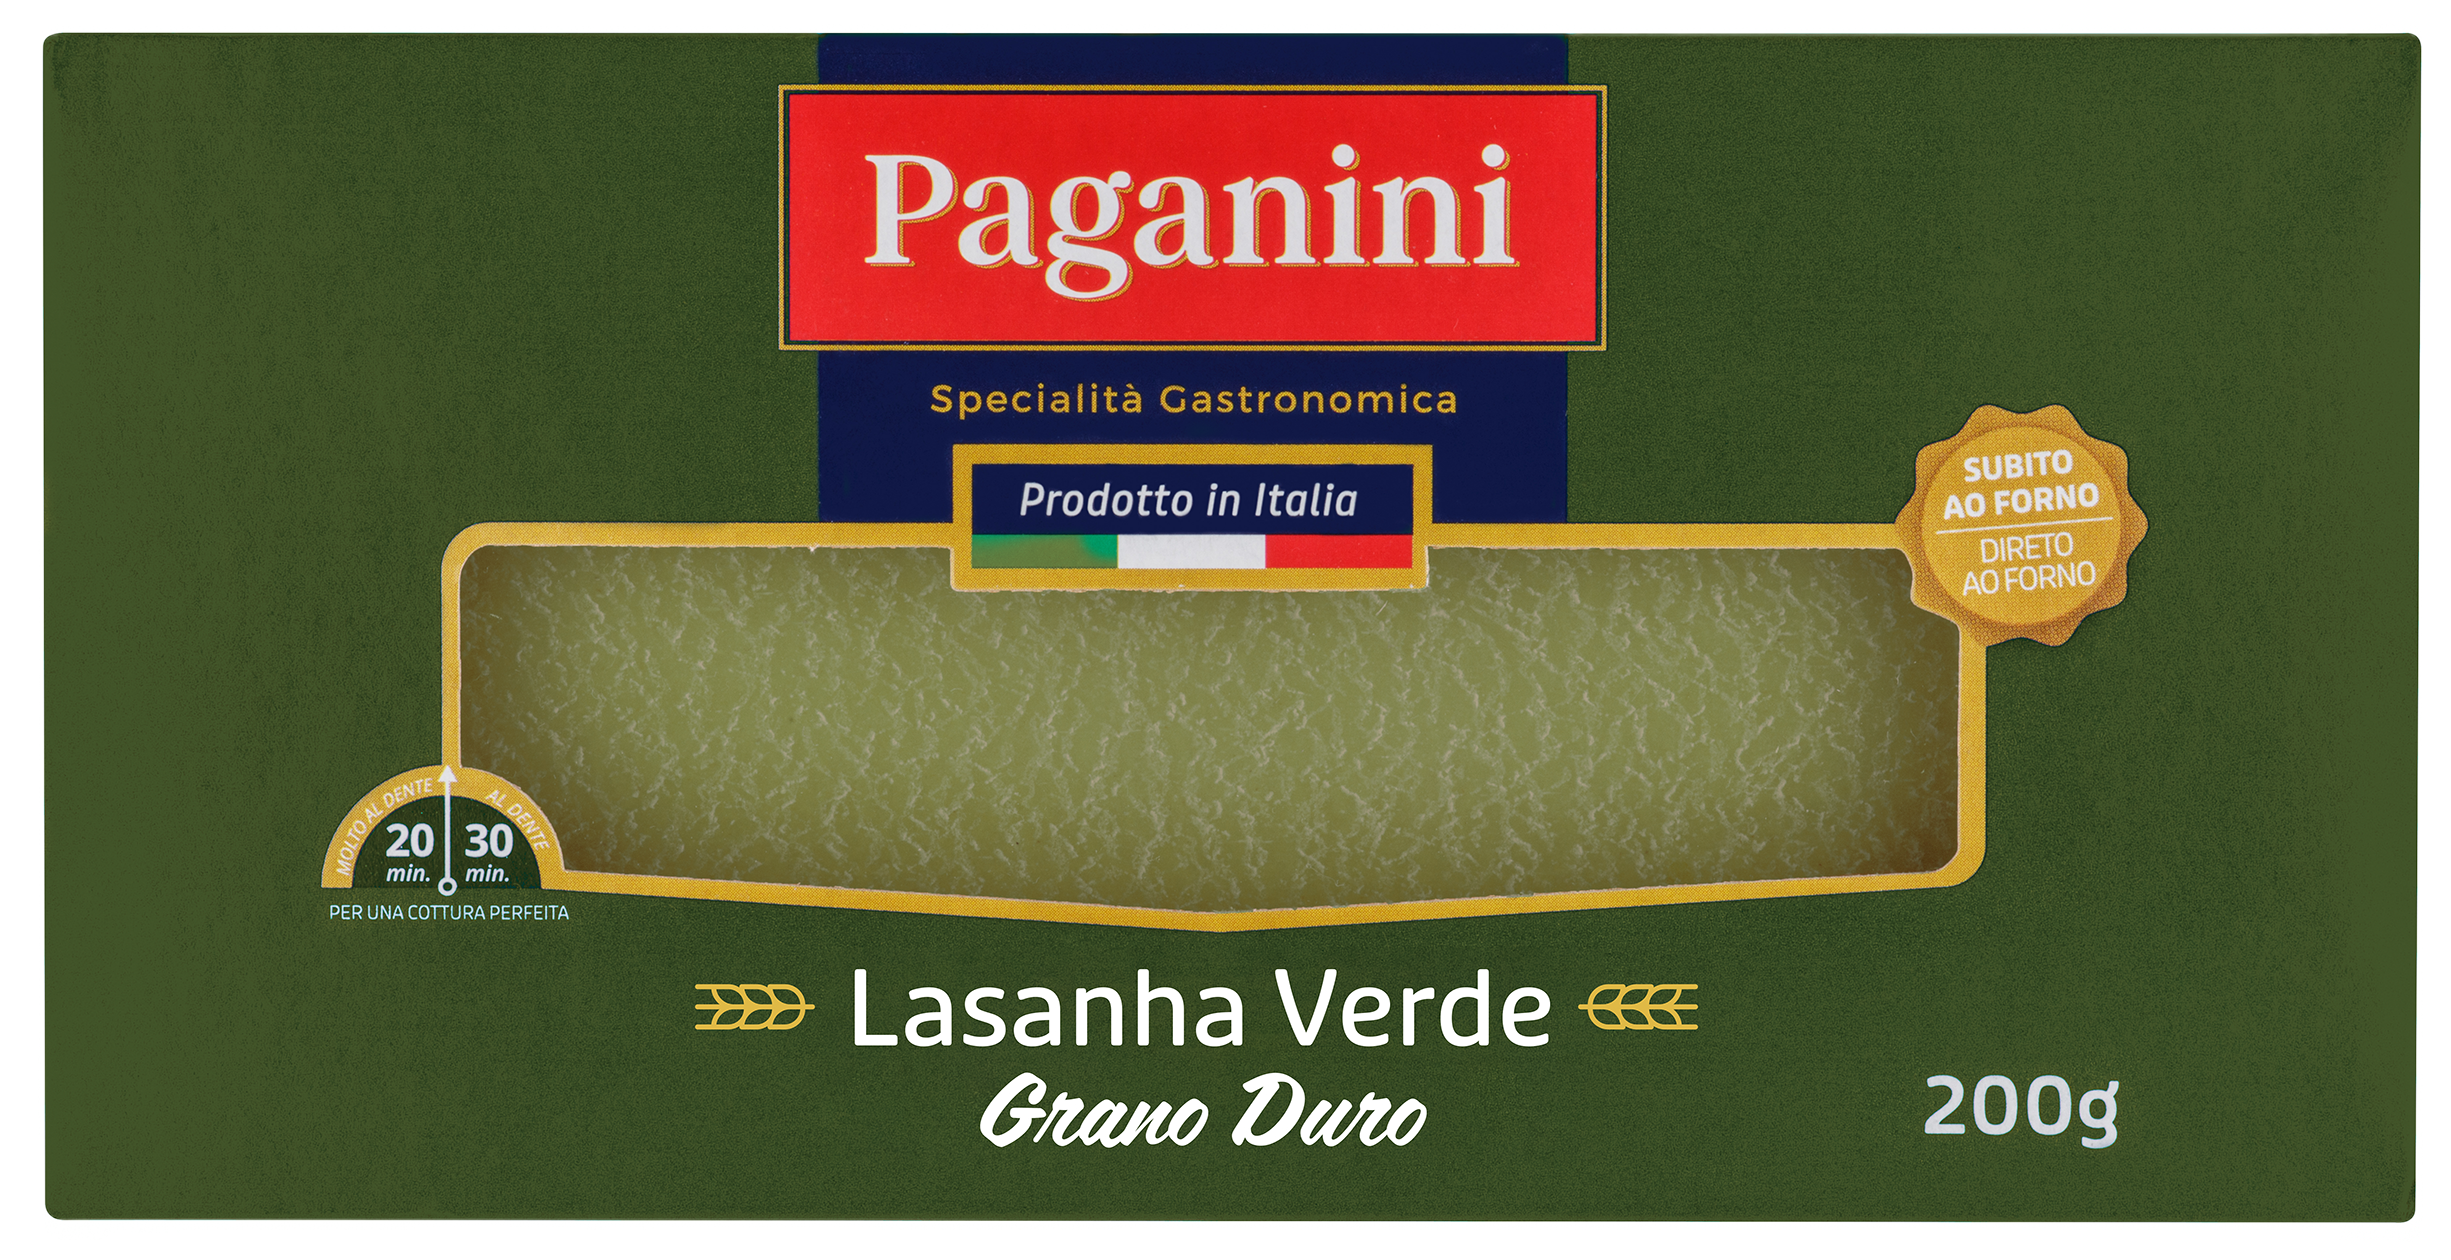 Paganini lança Lasagna Verde de grano duro